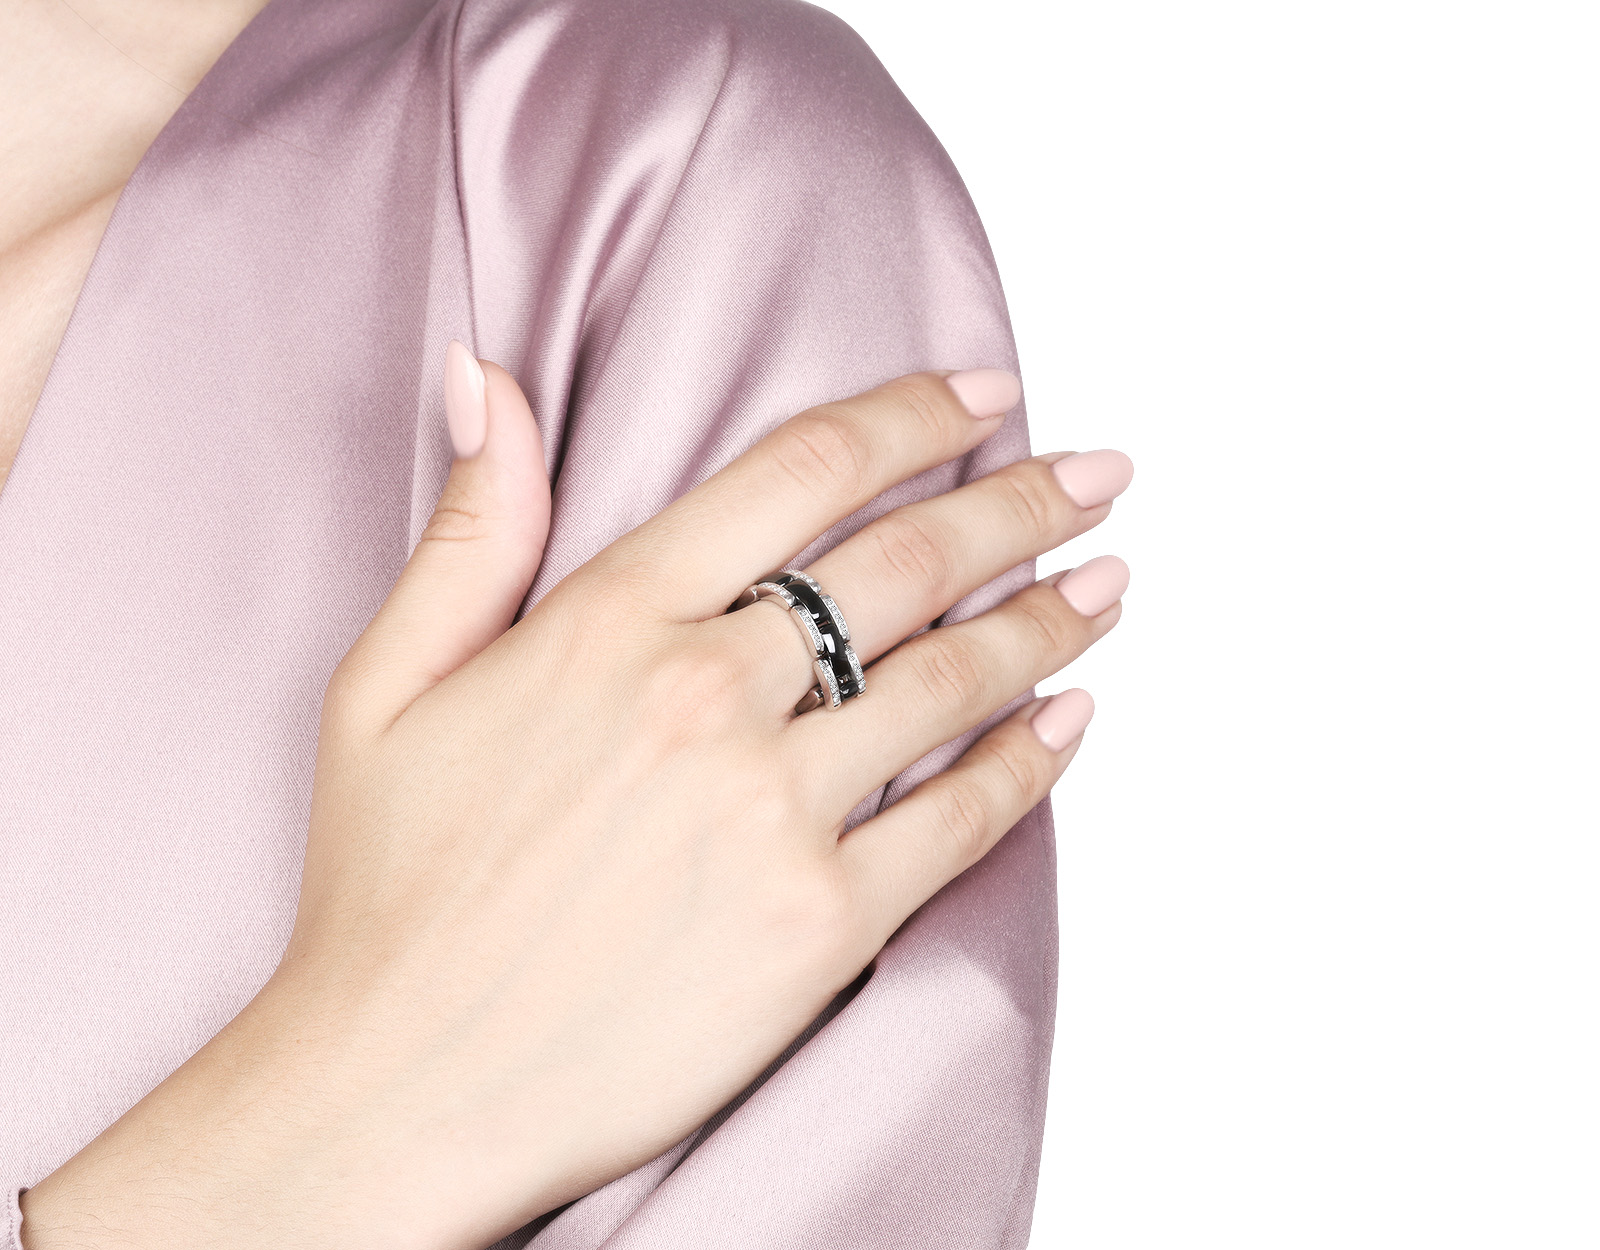 Оригинальное золотое кольцо с бриллиантами 0.24ct Chanel Ultra